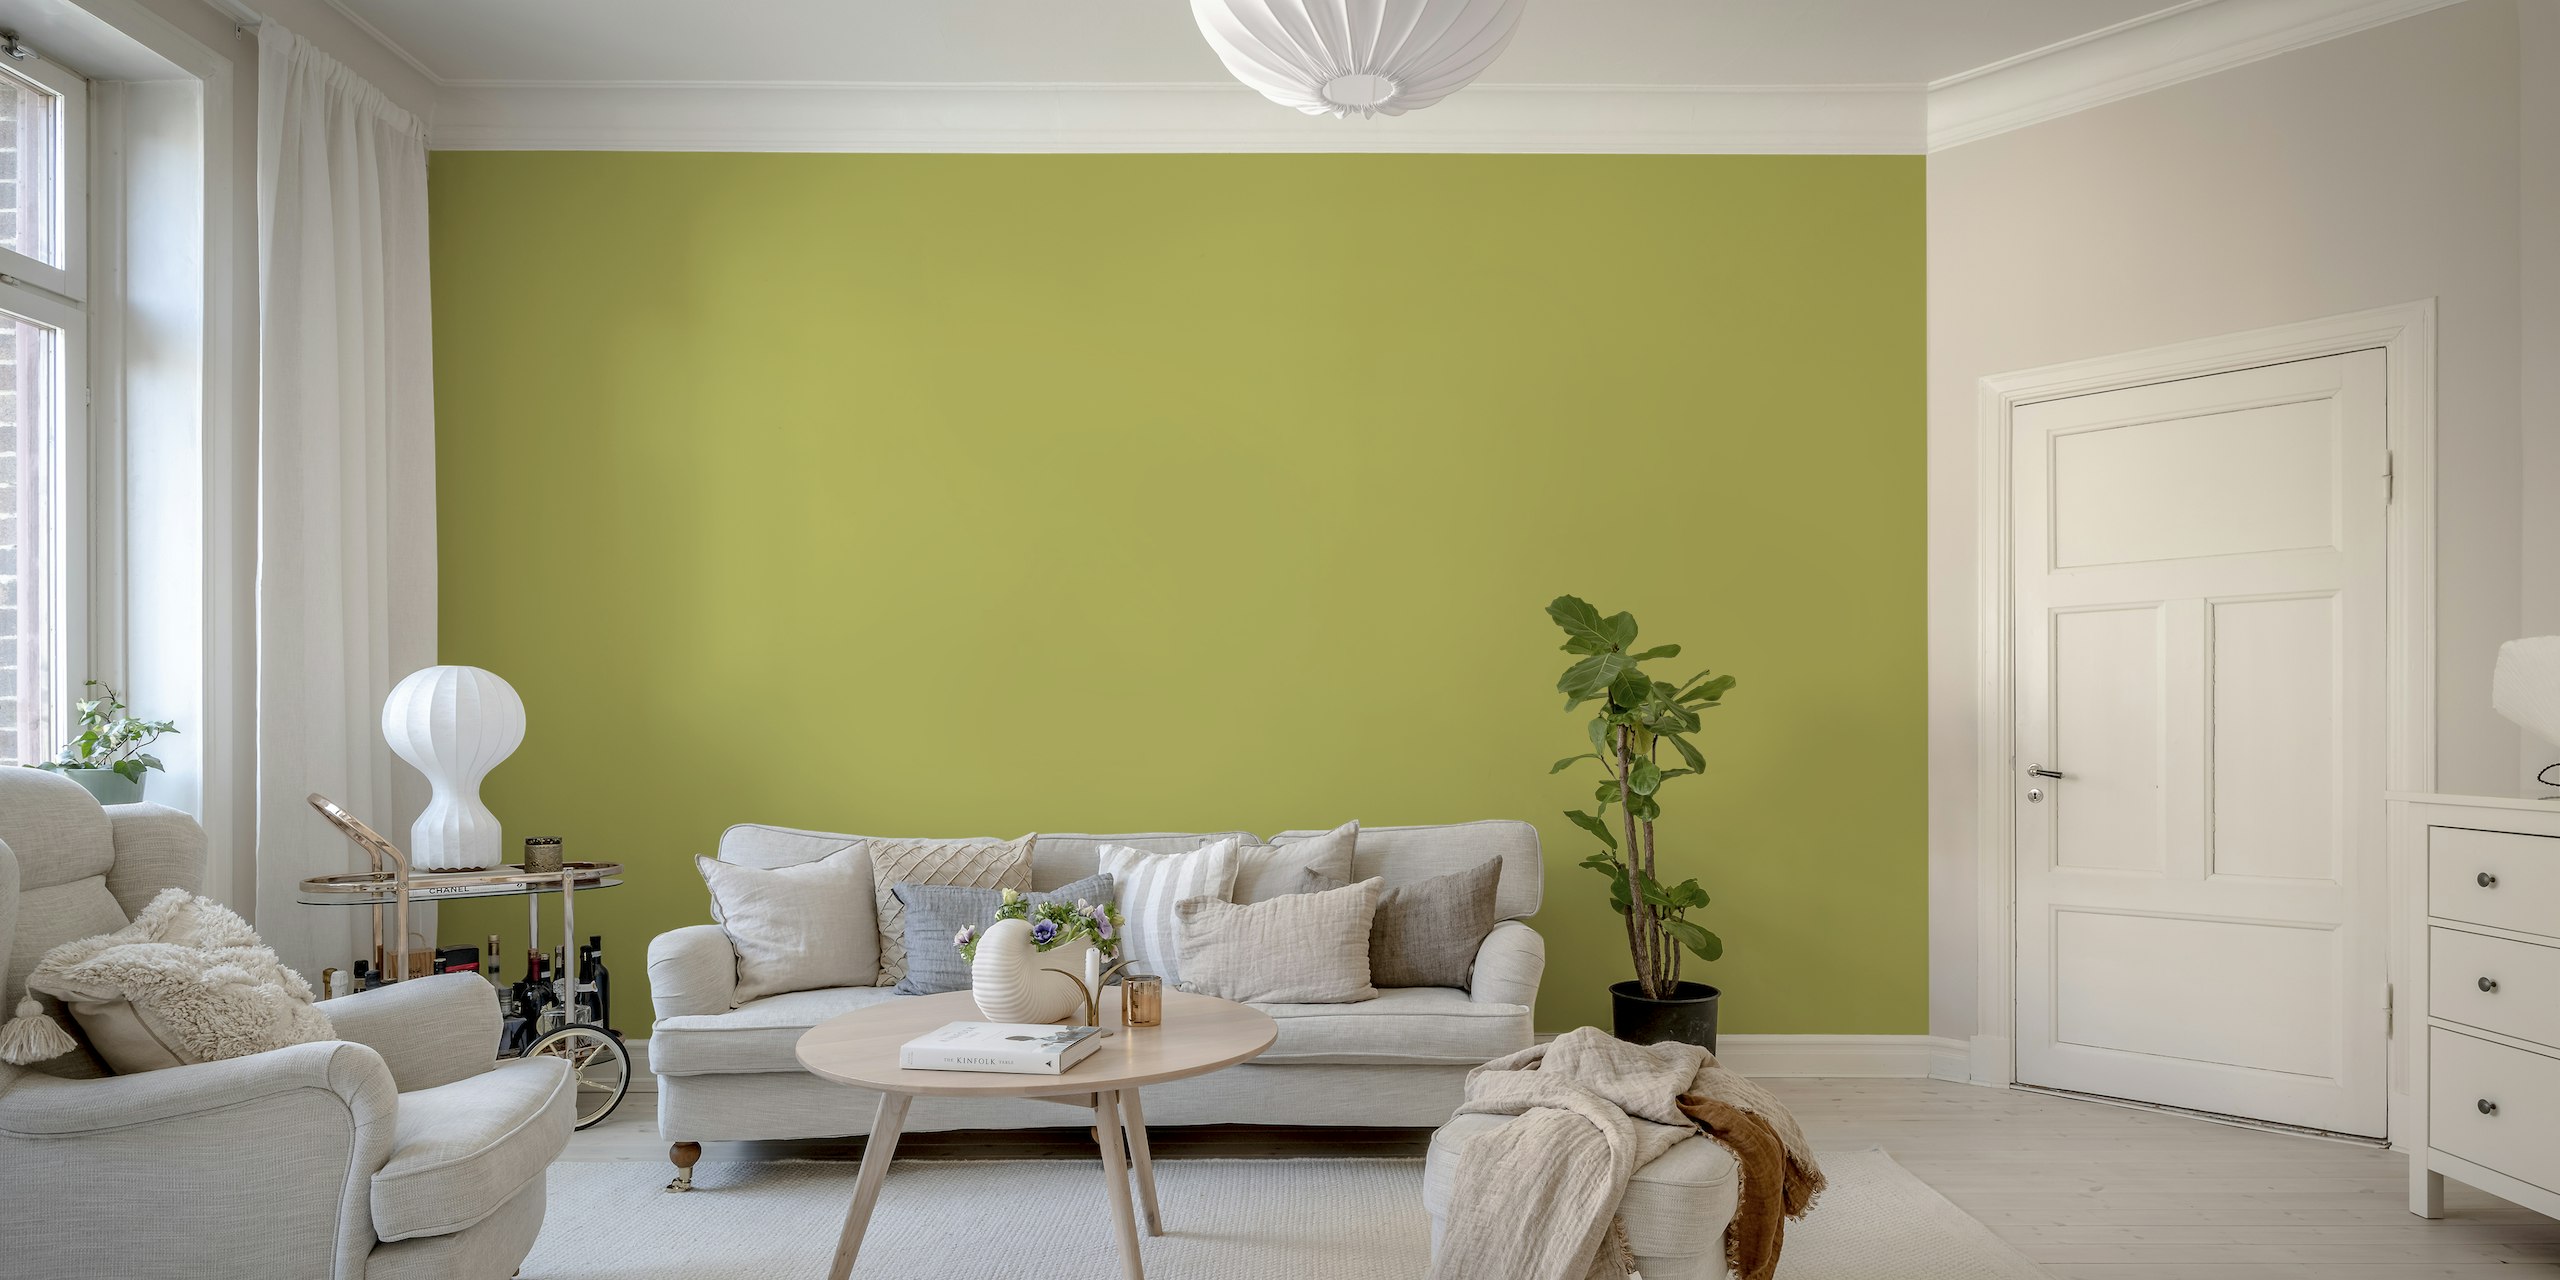 Olijfgroene effen kleur muurschildering die een rustige en verfijnde sfeer uitstraalt.